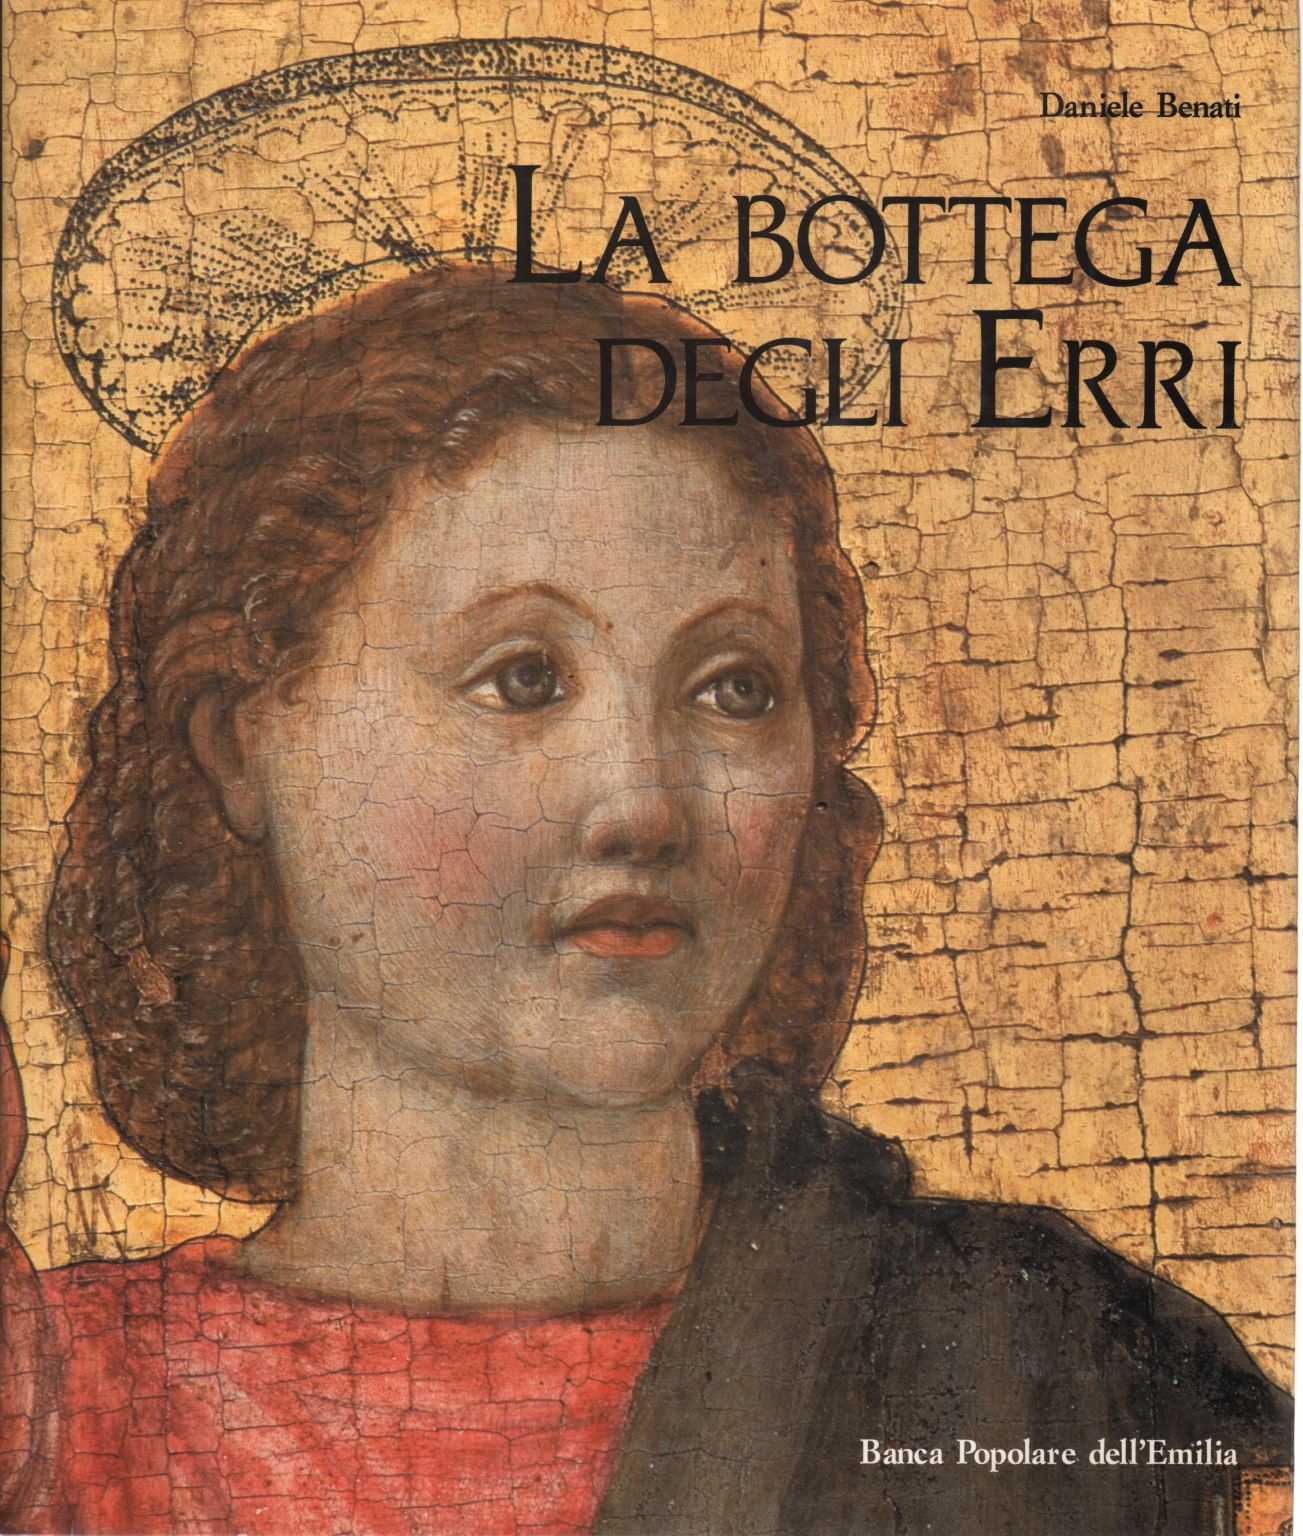 La bottega degli Erri and the art of Rinasciment, AA.VV.